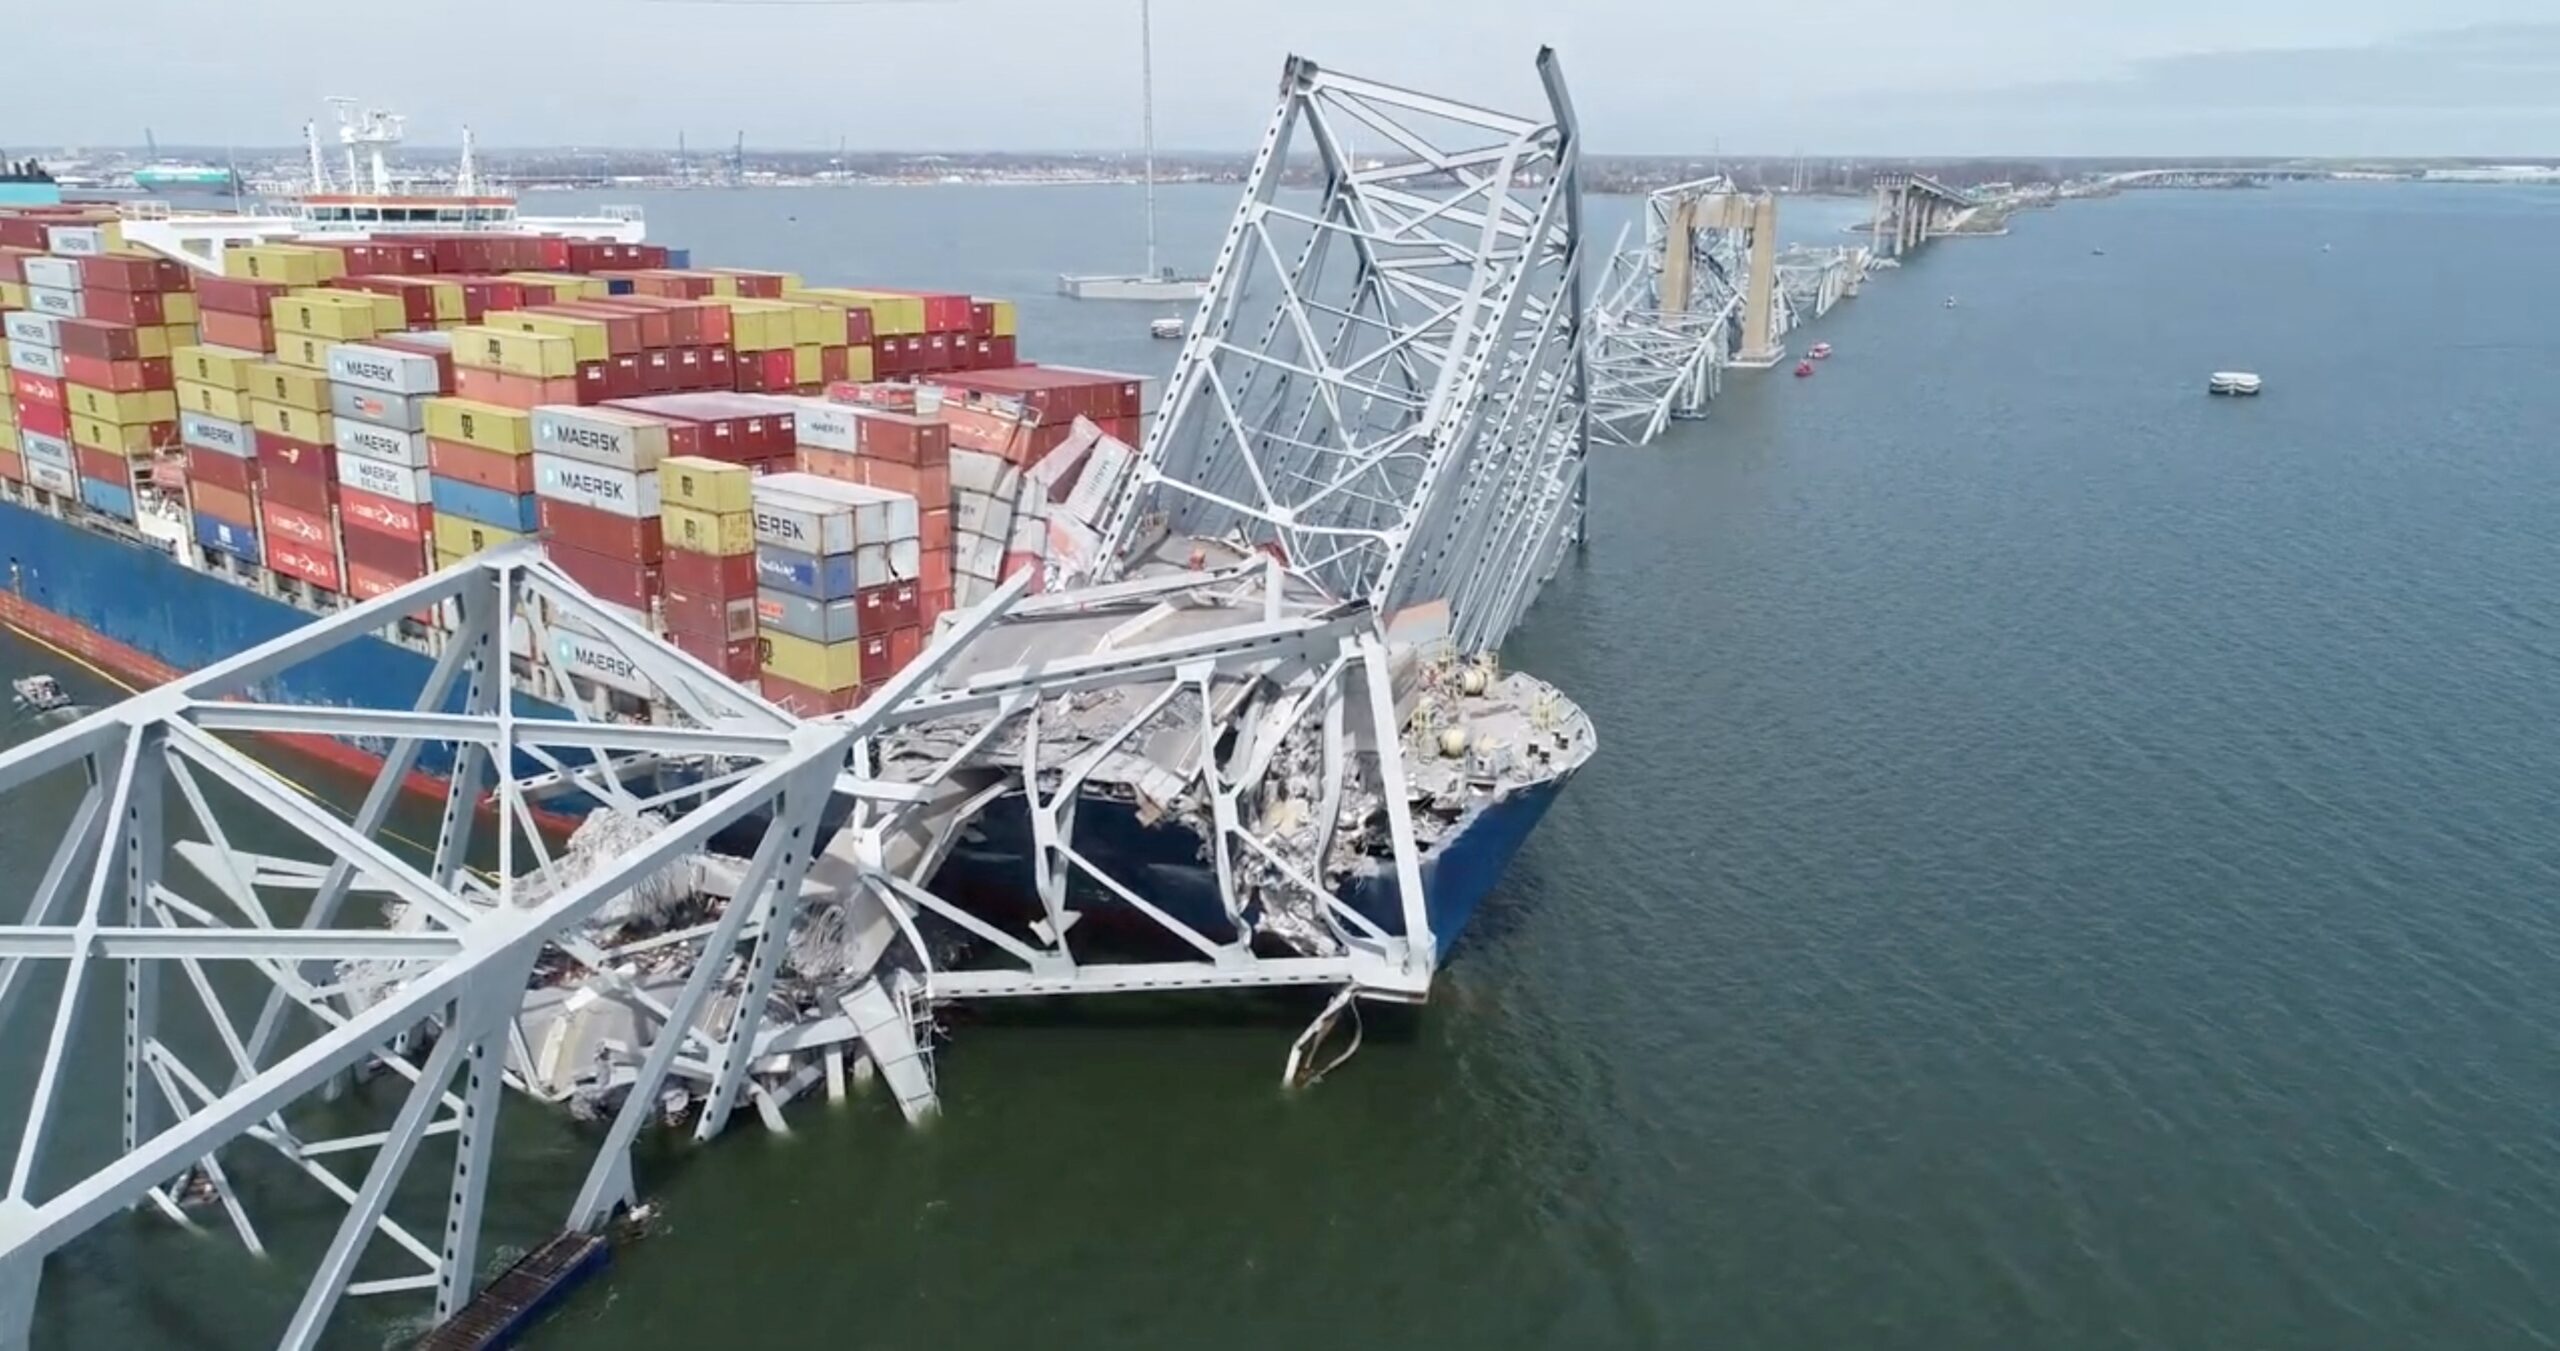 Metal retorcido, destroços e barris jogados: imagens revelam interior do navio que bateu em ponte nos EUA; VÍDEO